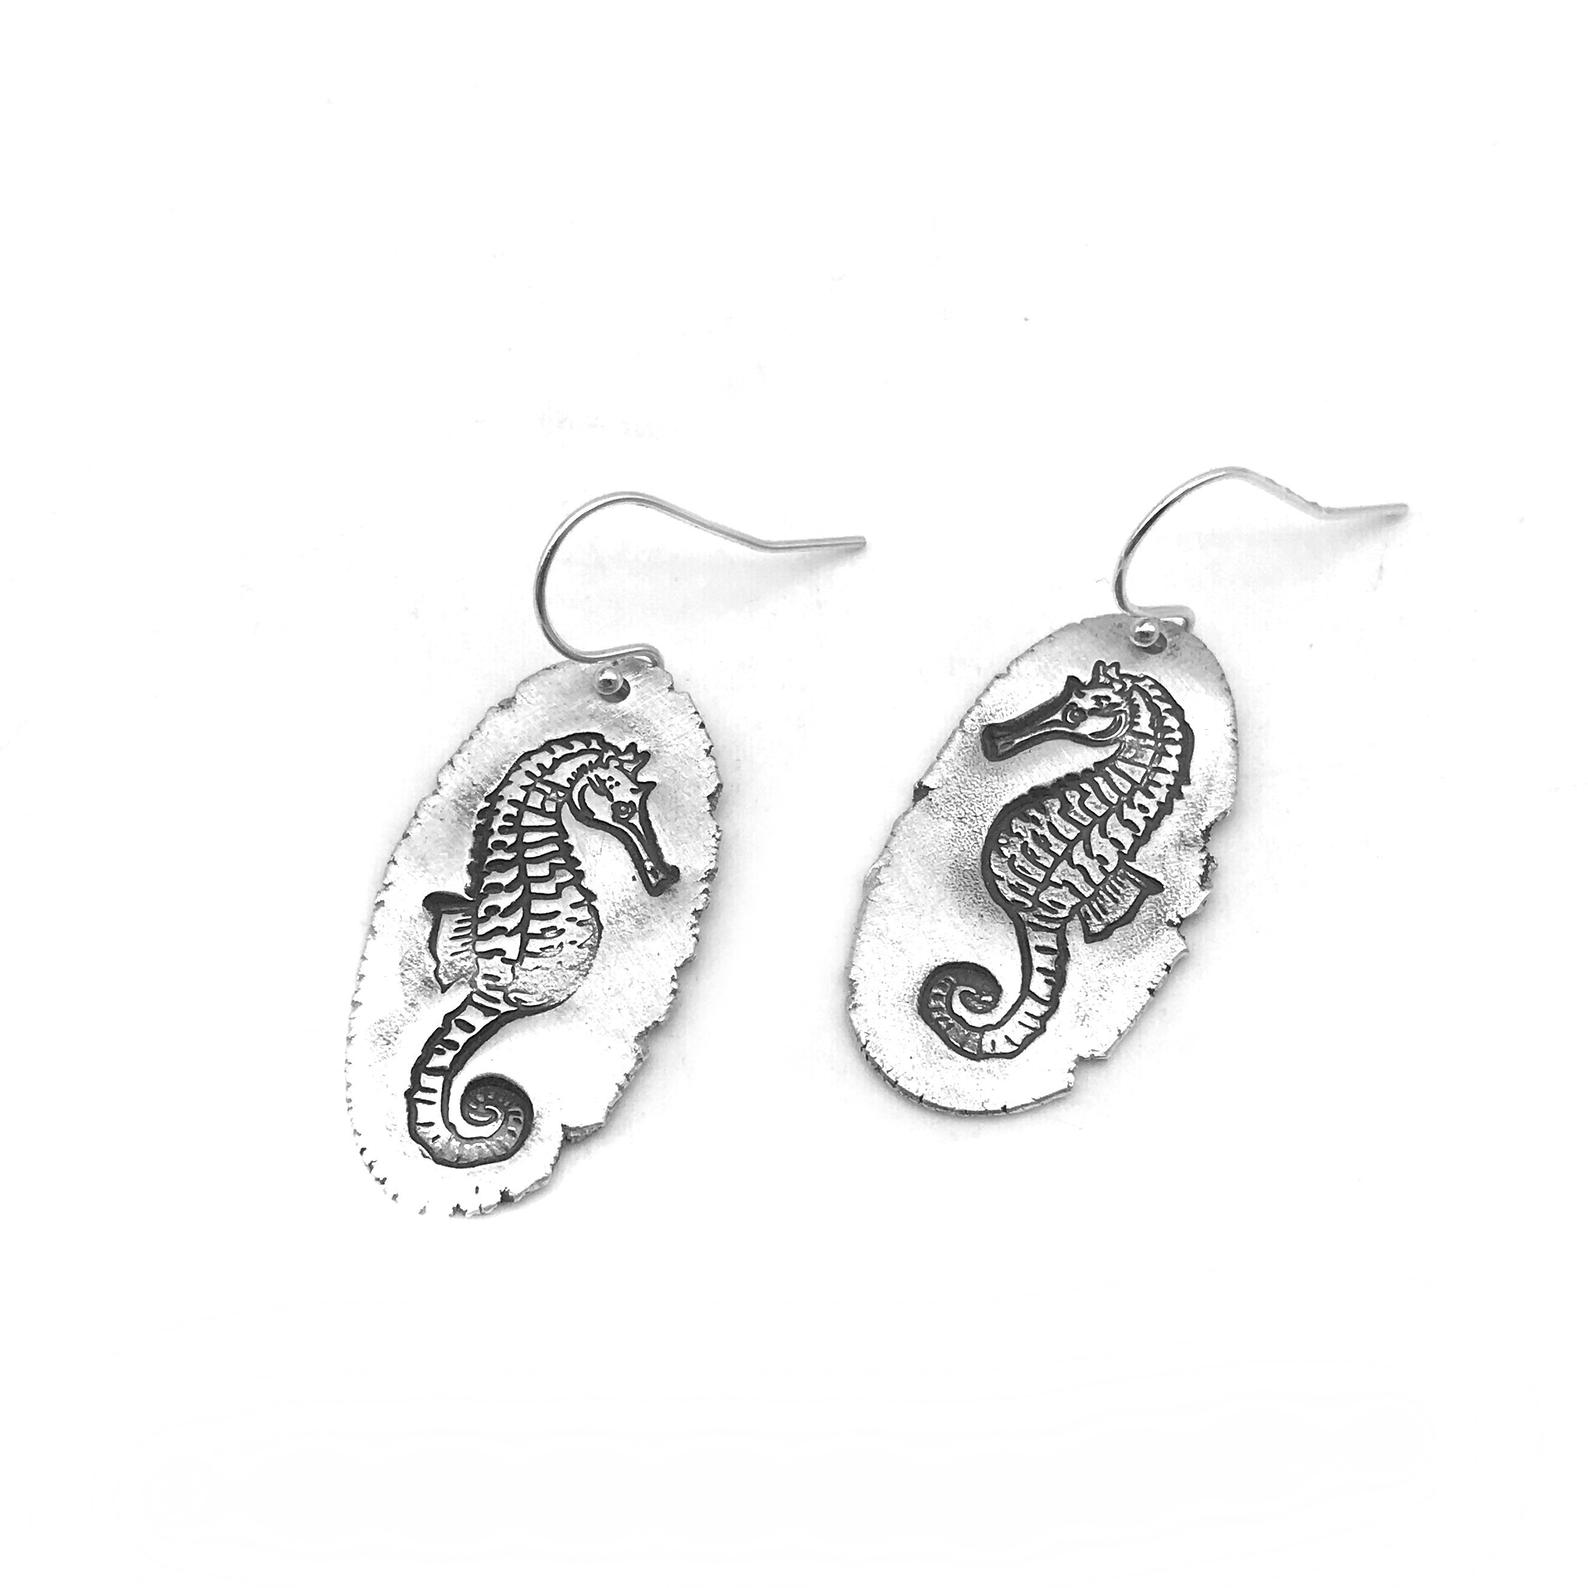 Coastal Earrings Under the Sea Earrings Beach Earrings Ocean Earrings Gift for Beach Lover Seahorse Earrings